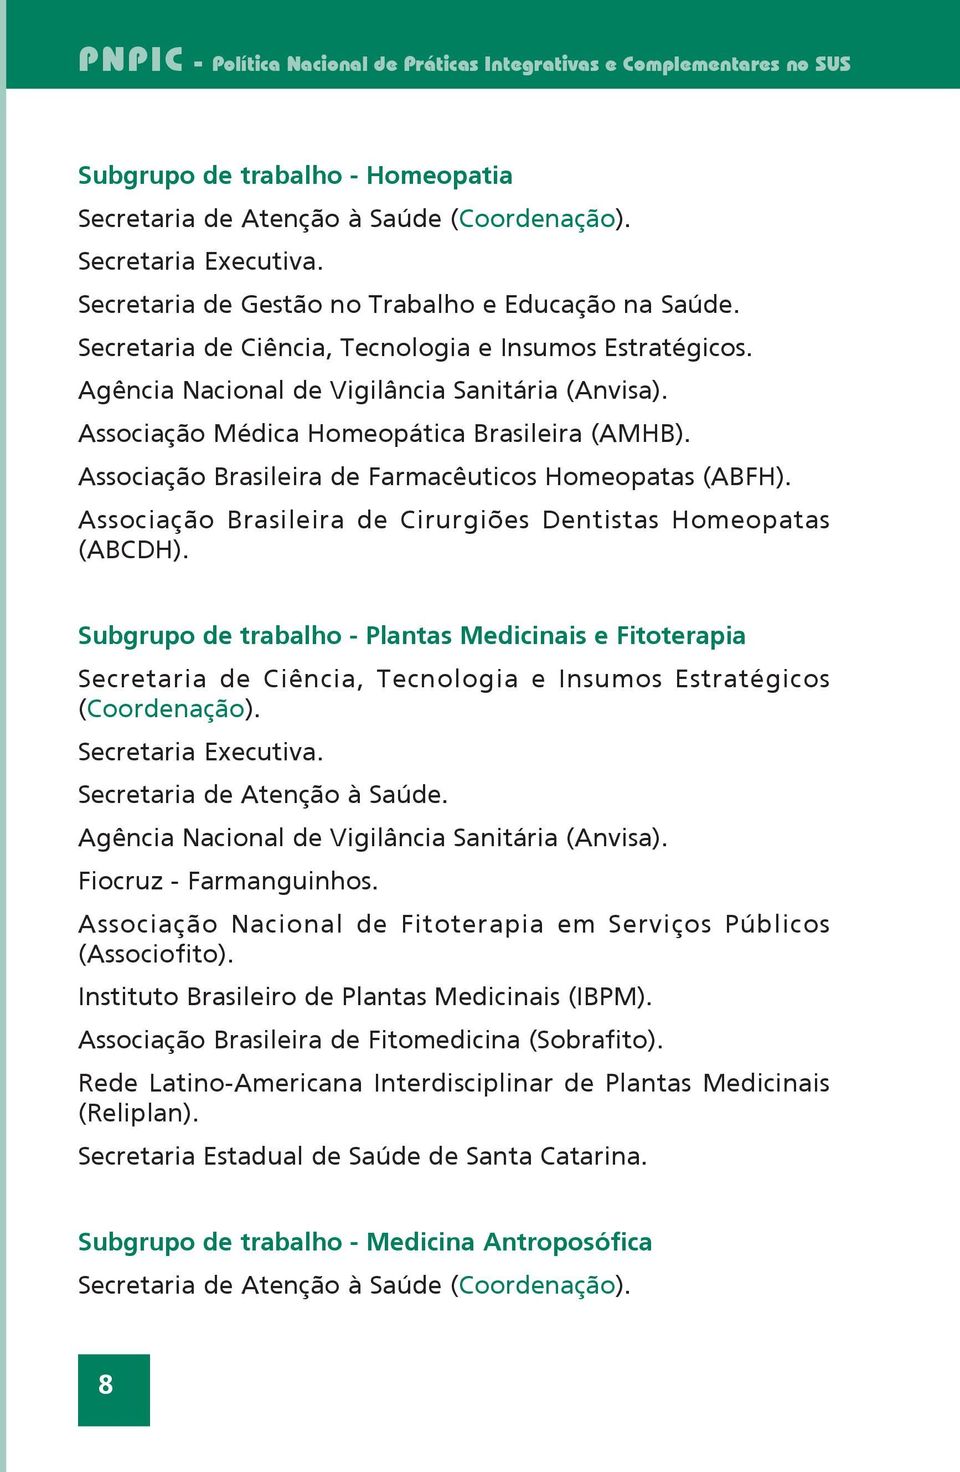 Associação Médica Homeopática Brasileira (AMHB). Associação Brasileira de Farmacêuticos Homeopatas (ABFH). Associação Brasileira de Cirurgiões Dentistas Homeopatas (ABCDH).